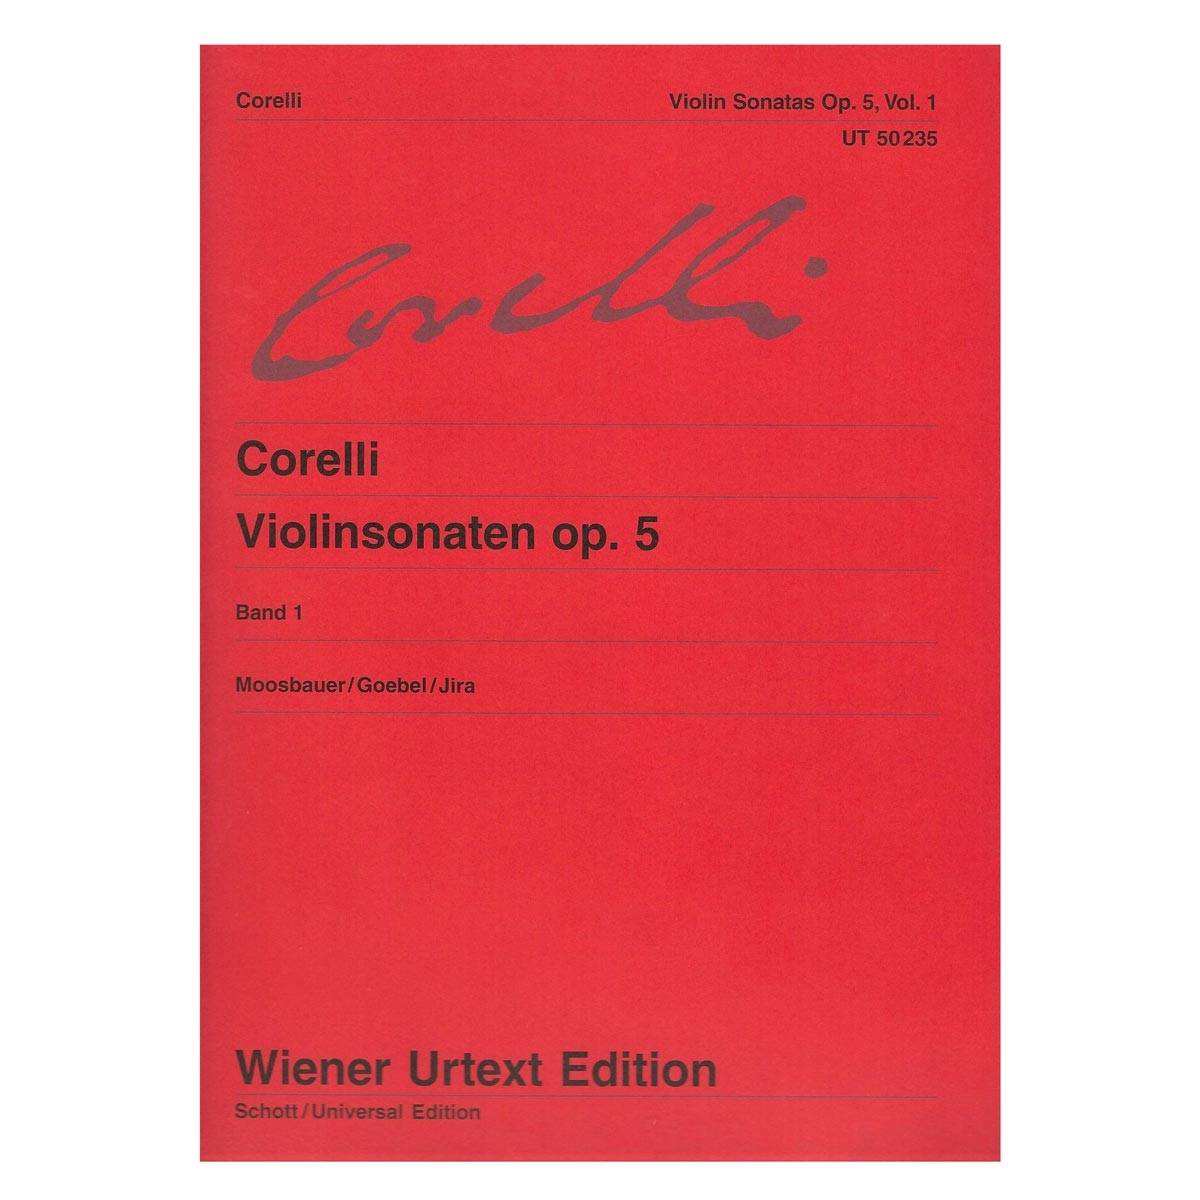 Corelli - Violin Sonatas Op.5 Vol.1